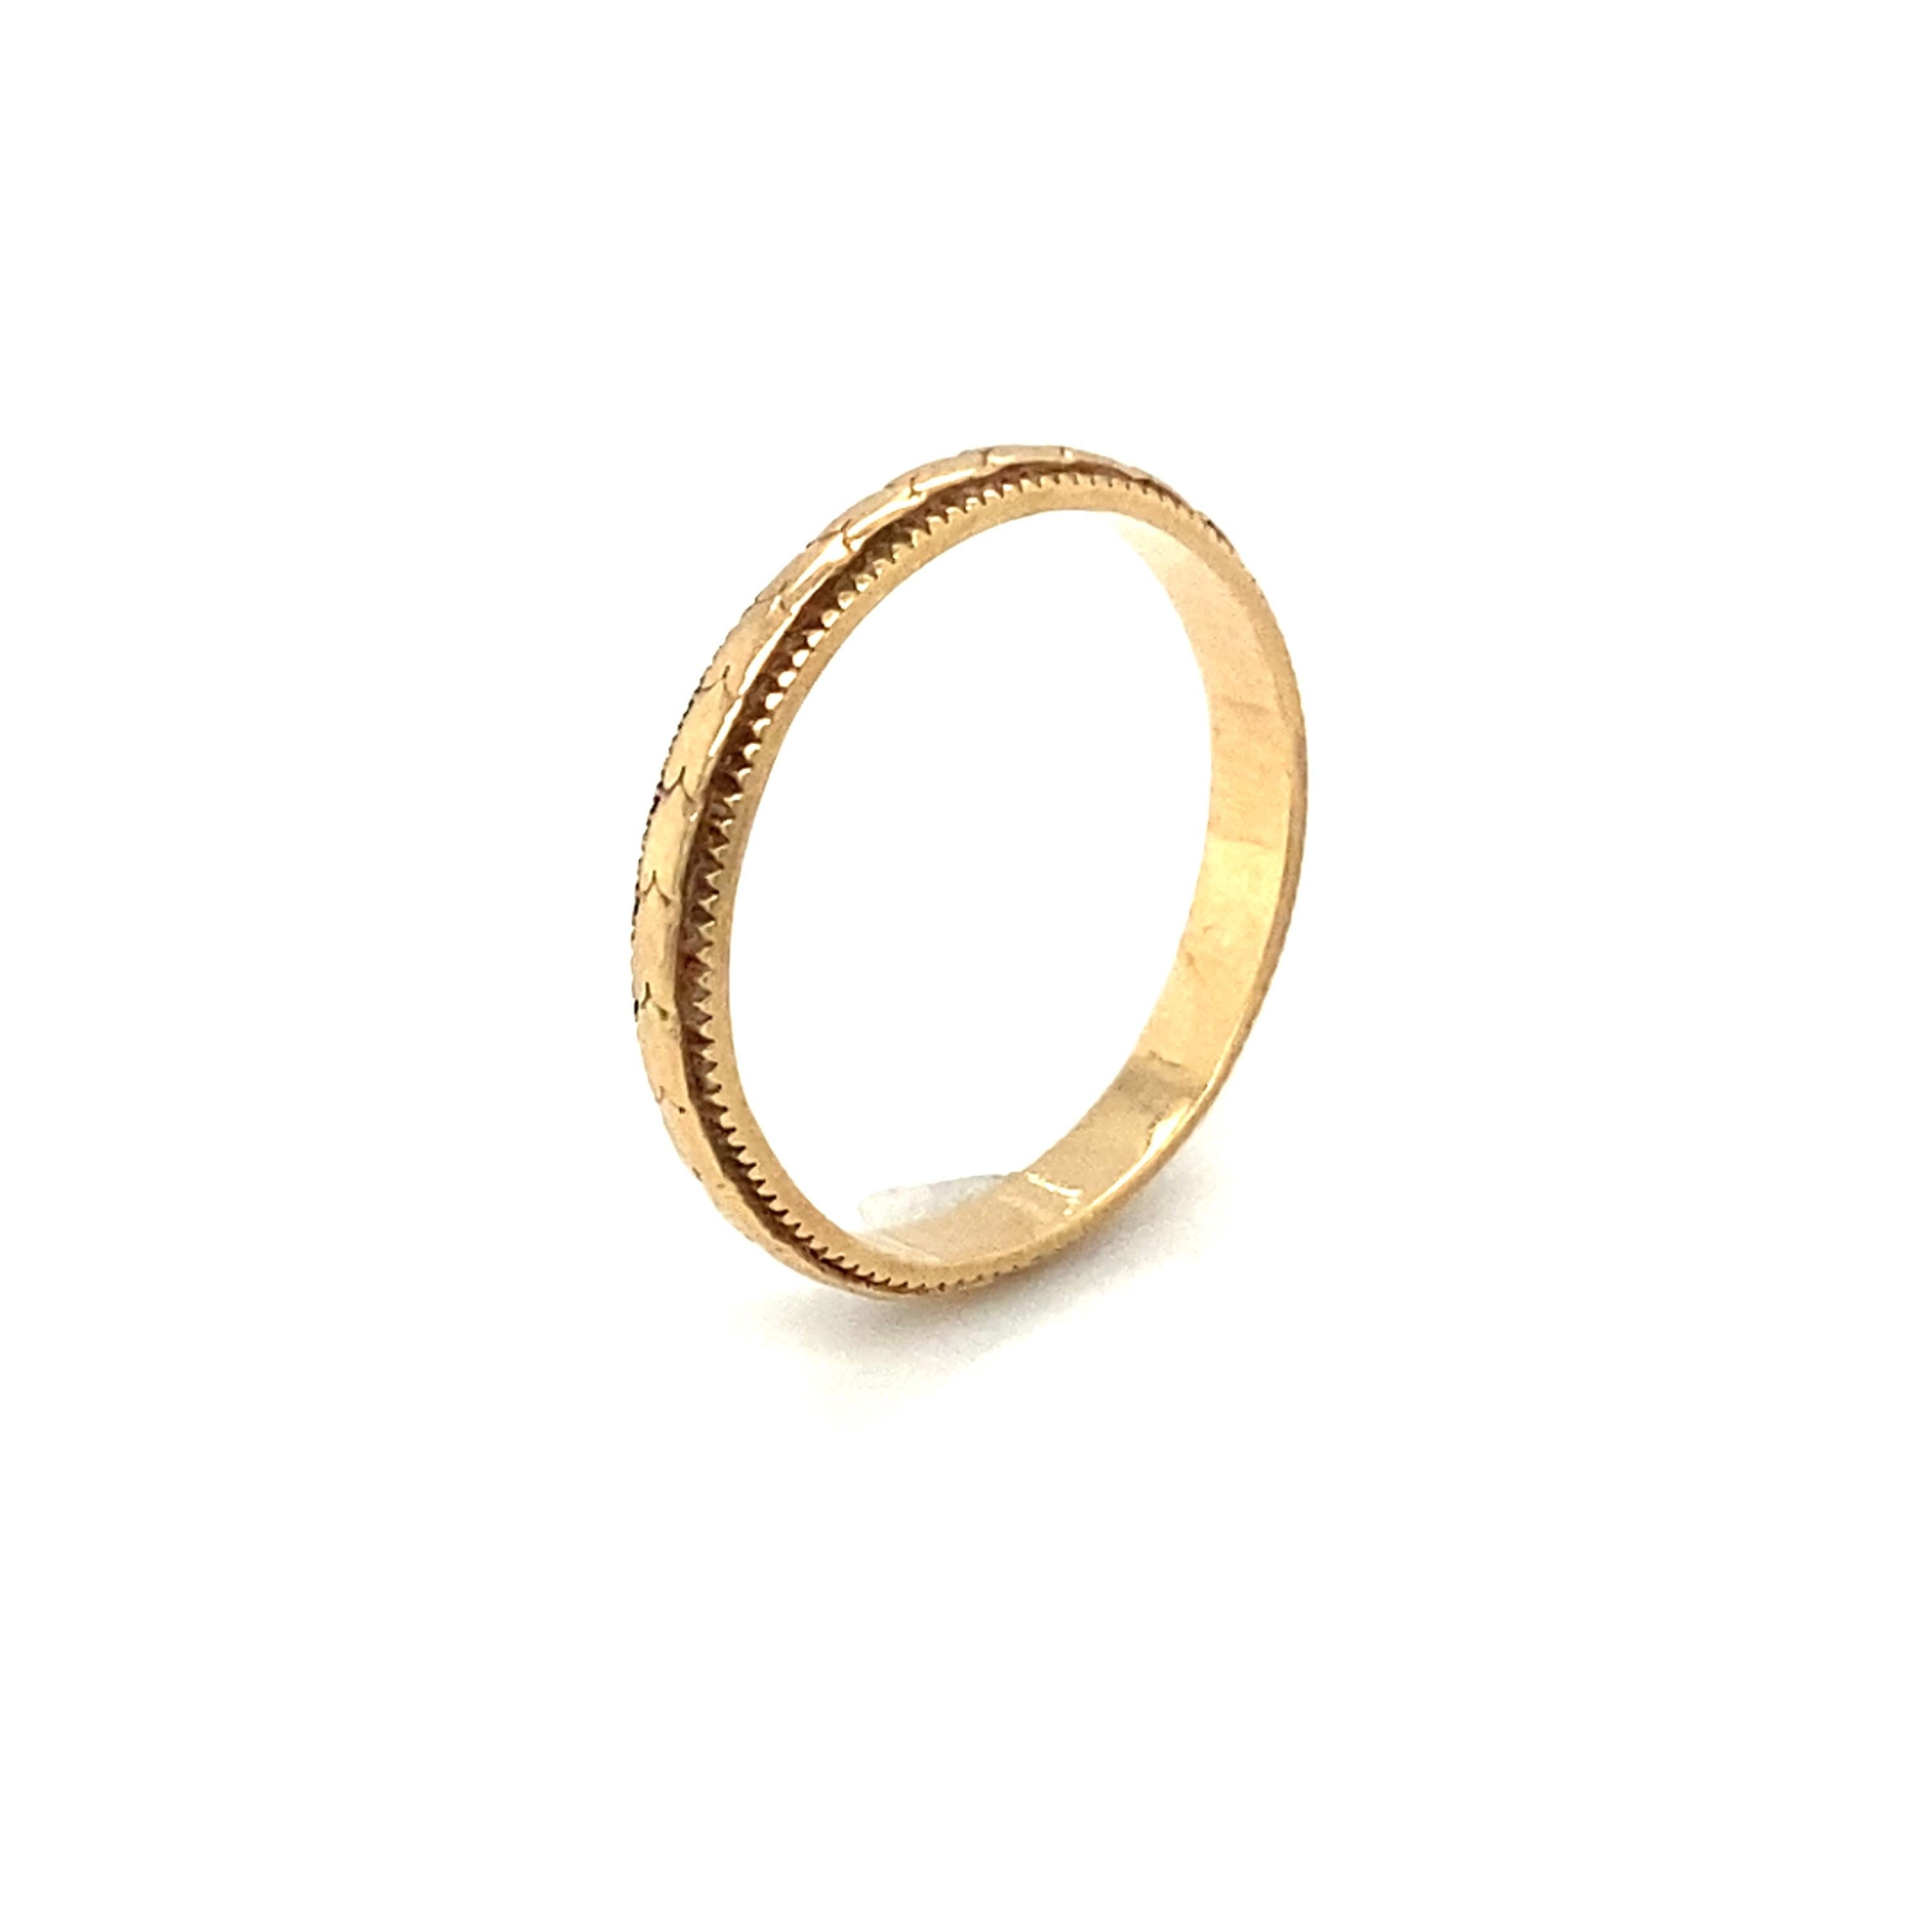 Artikel-Details:
Metalltyp: 14 Karat Gelbgold 
Gewicht: 1,7 Gramm 
Größe: 5 (größenveränderbar)
14K gestempelt

Artikelmerkmale:
Dieser elegante und doch schlichte Art-Déco-Ring wurde in den 1920er Jahren hergestellt. Dieser Ring ist sehr gut